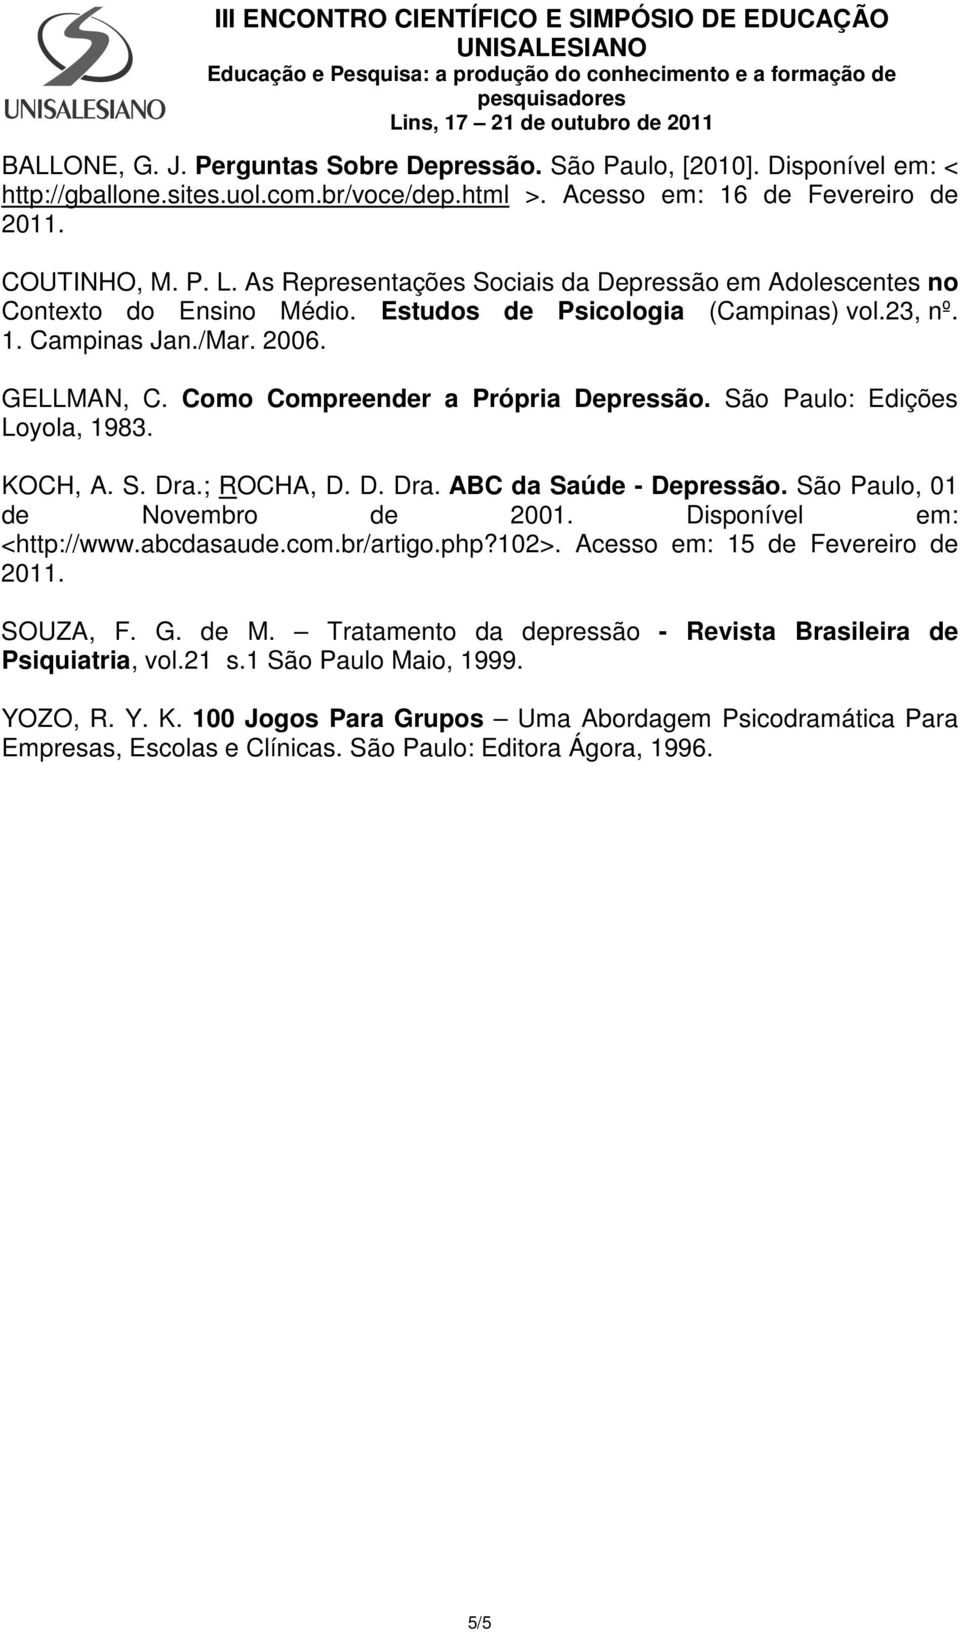 Como Compreender a Própria Depressão. São Paulo: Edições Loyola, 1983. KOCH, A. S. Dra.; ROCHA, D. D. Dra. ABC da Saúde - Depressão. São Paulo, 01 de Novembro de 2001. Disponível em: <http://www.